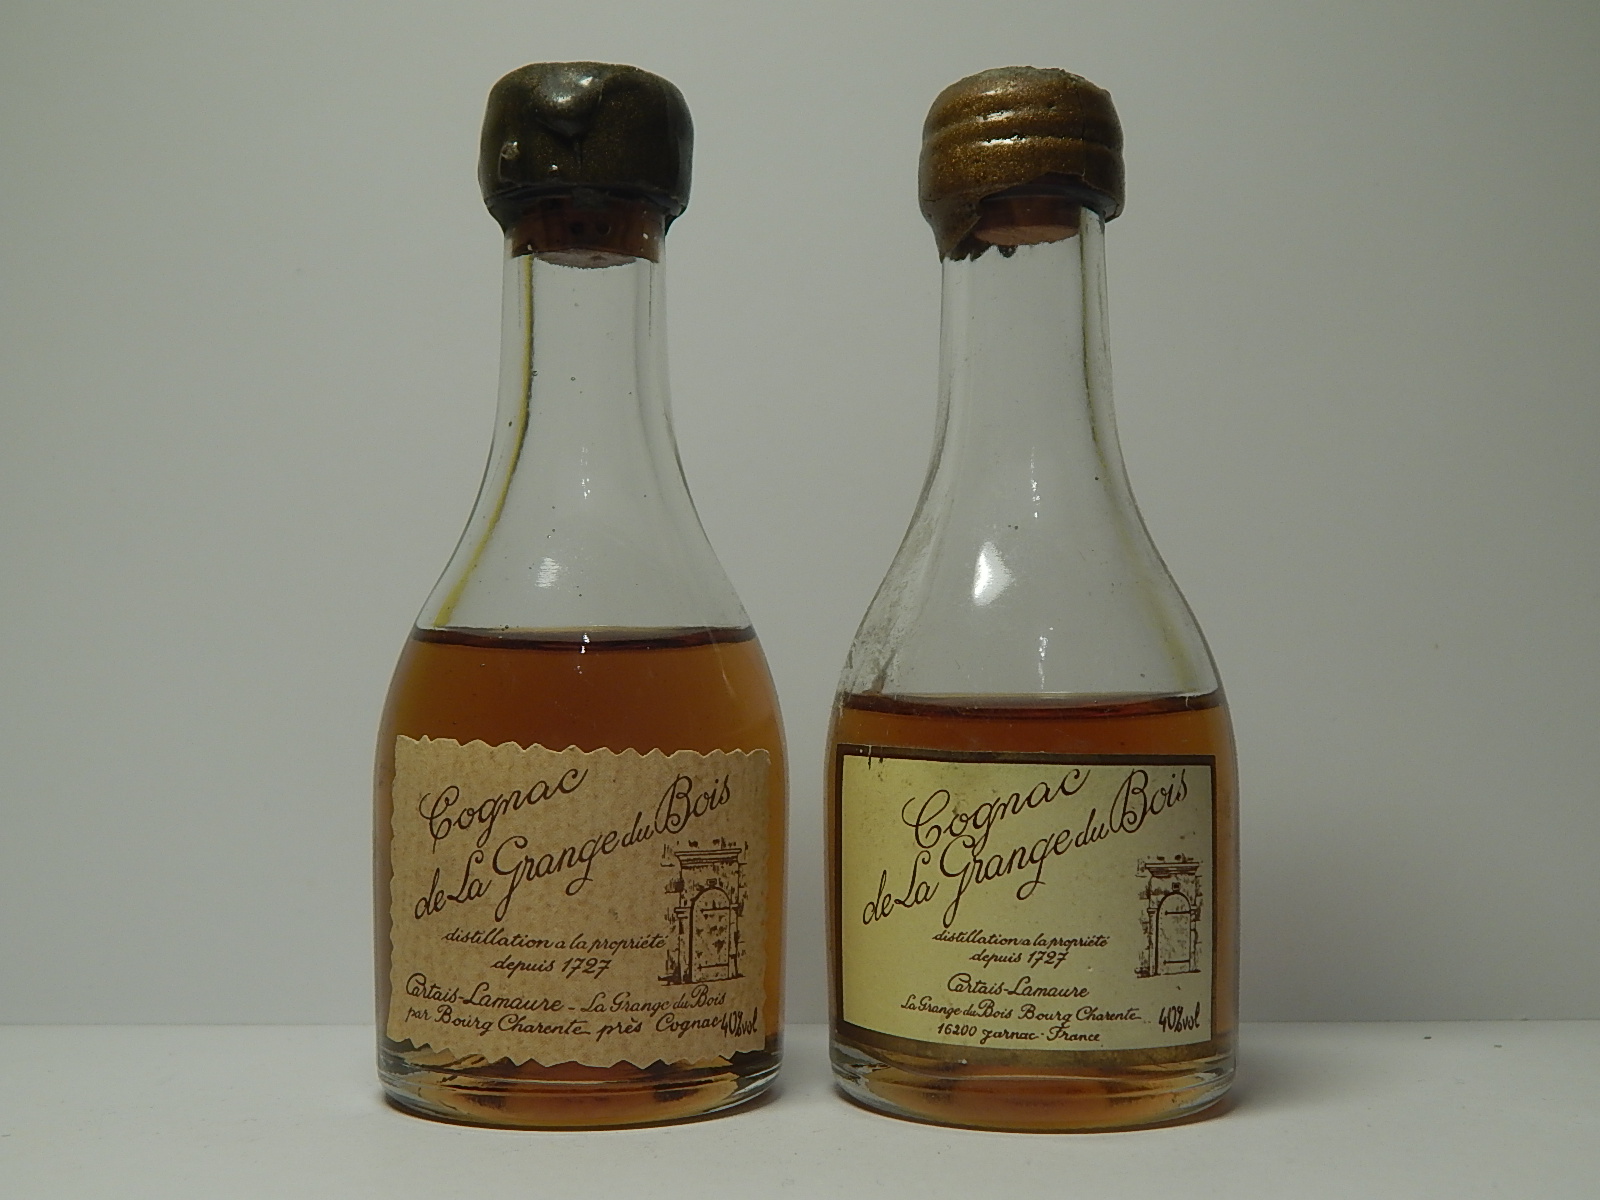 CARTAIS LAMAURE de la Grande du Bois Cognac